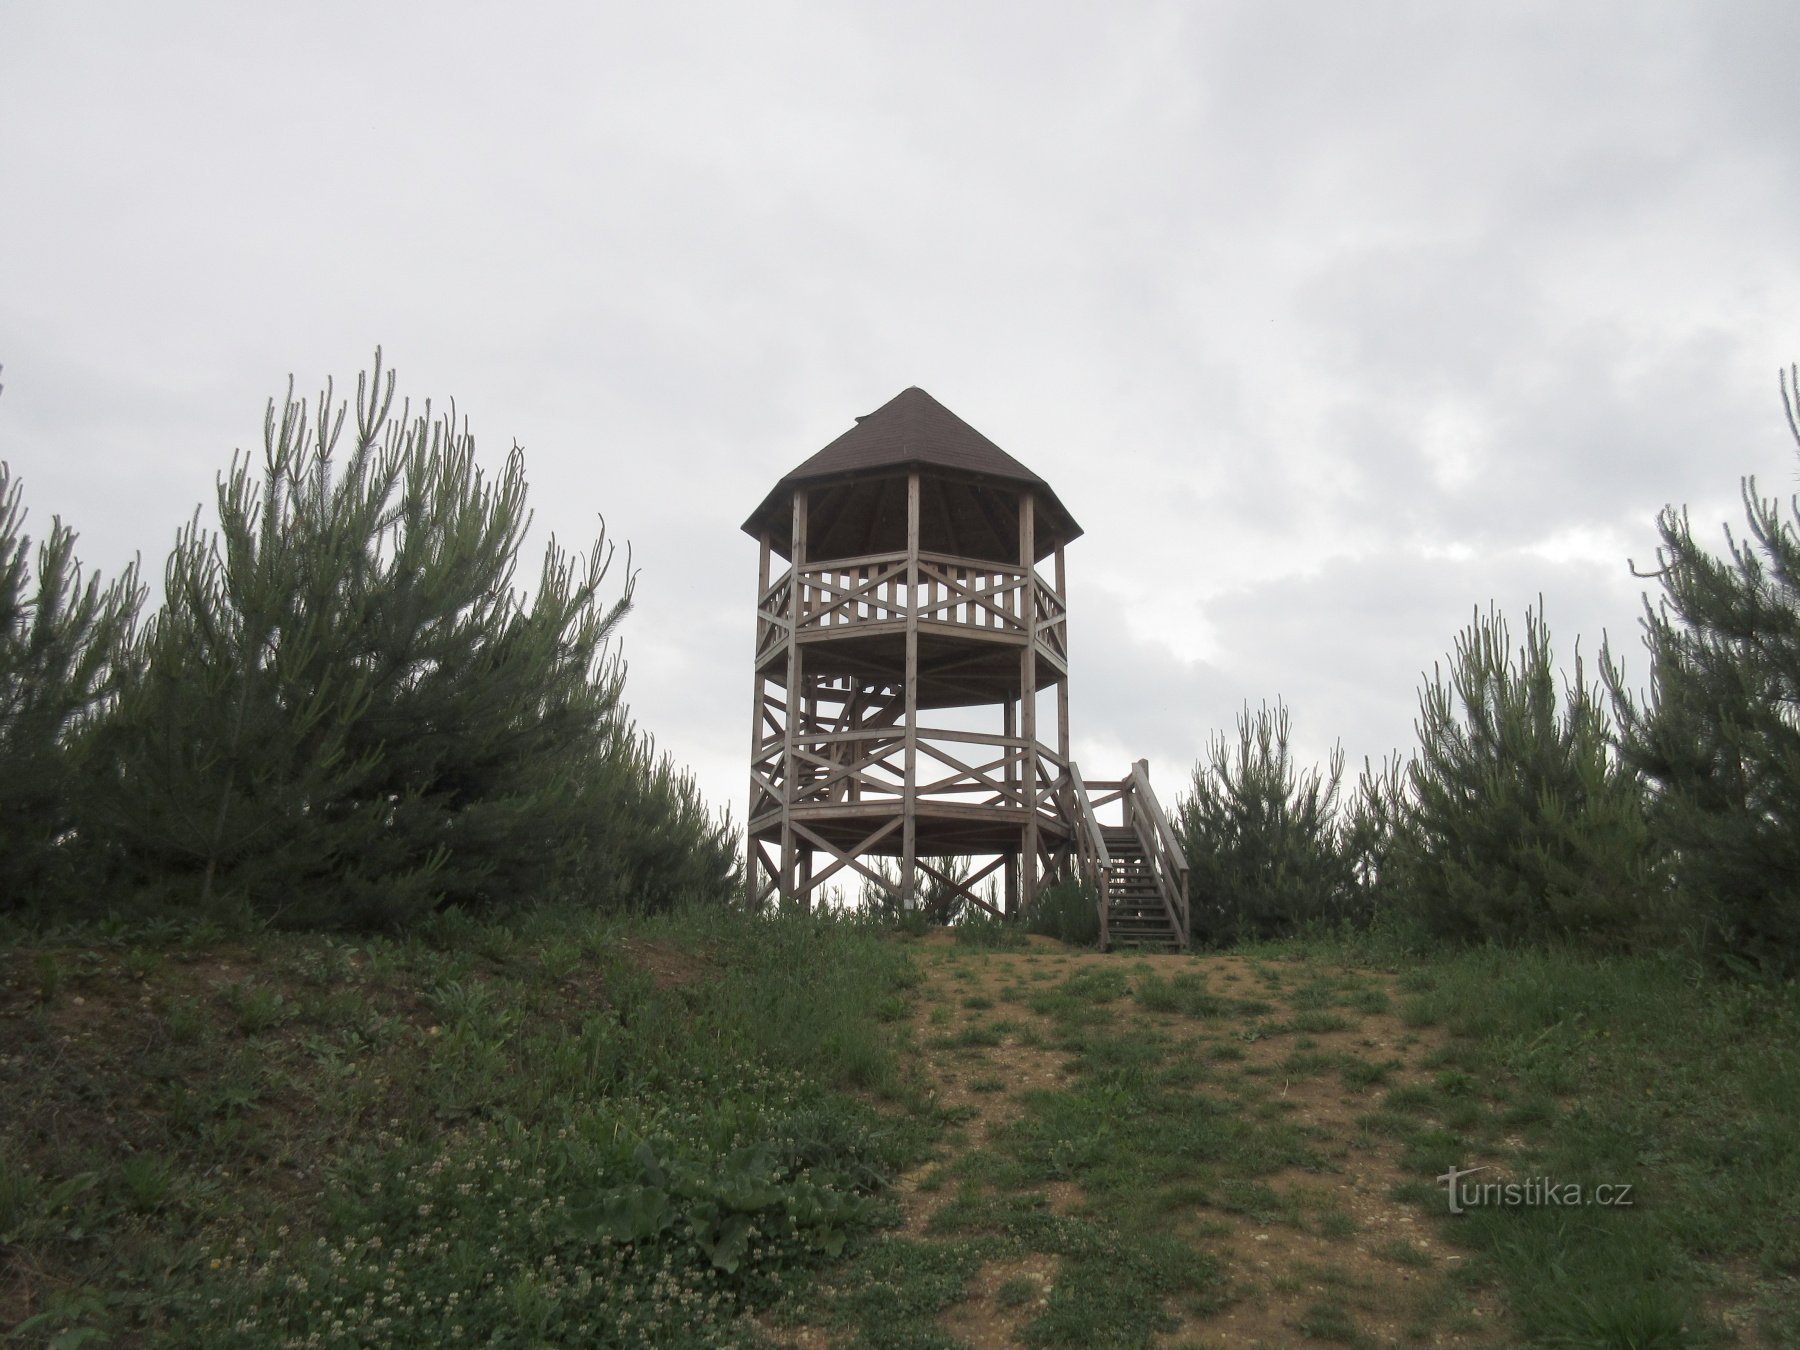 Wieża widokowa od strony południowej - dostępna